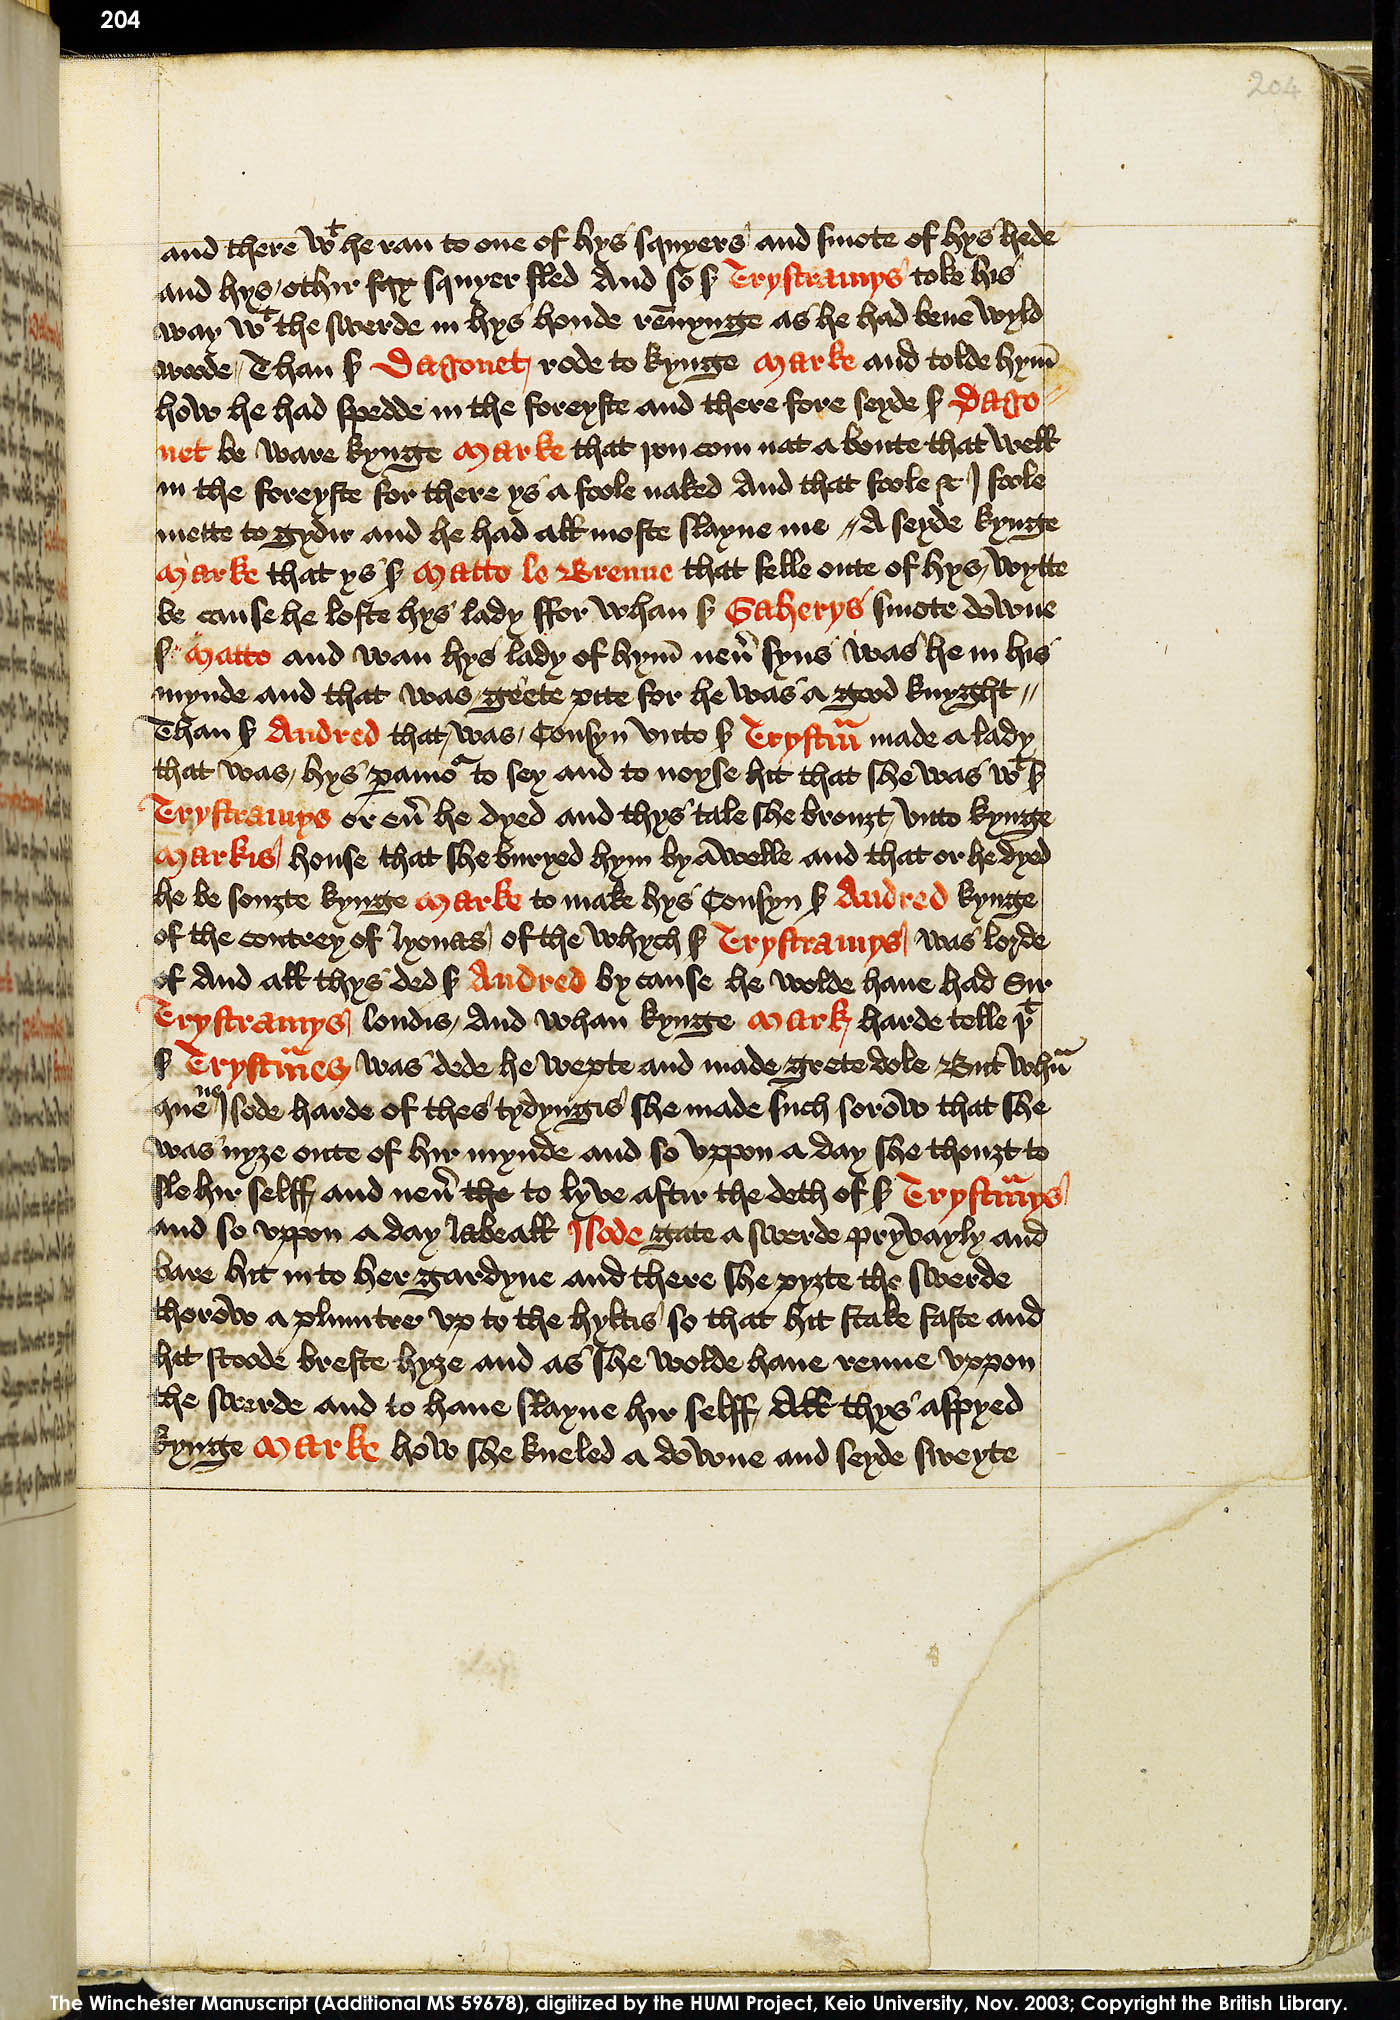 Folio 204r